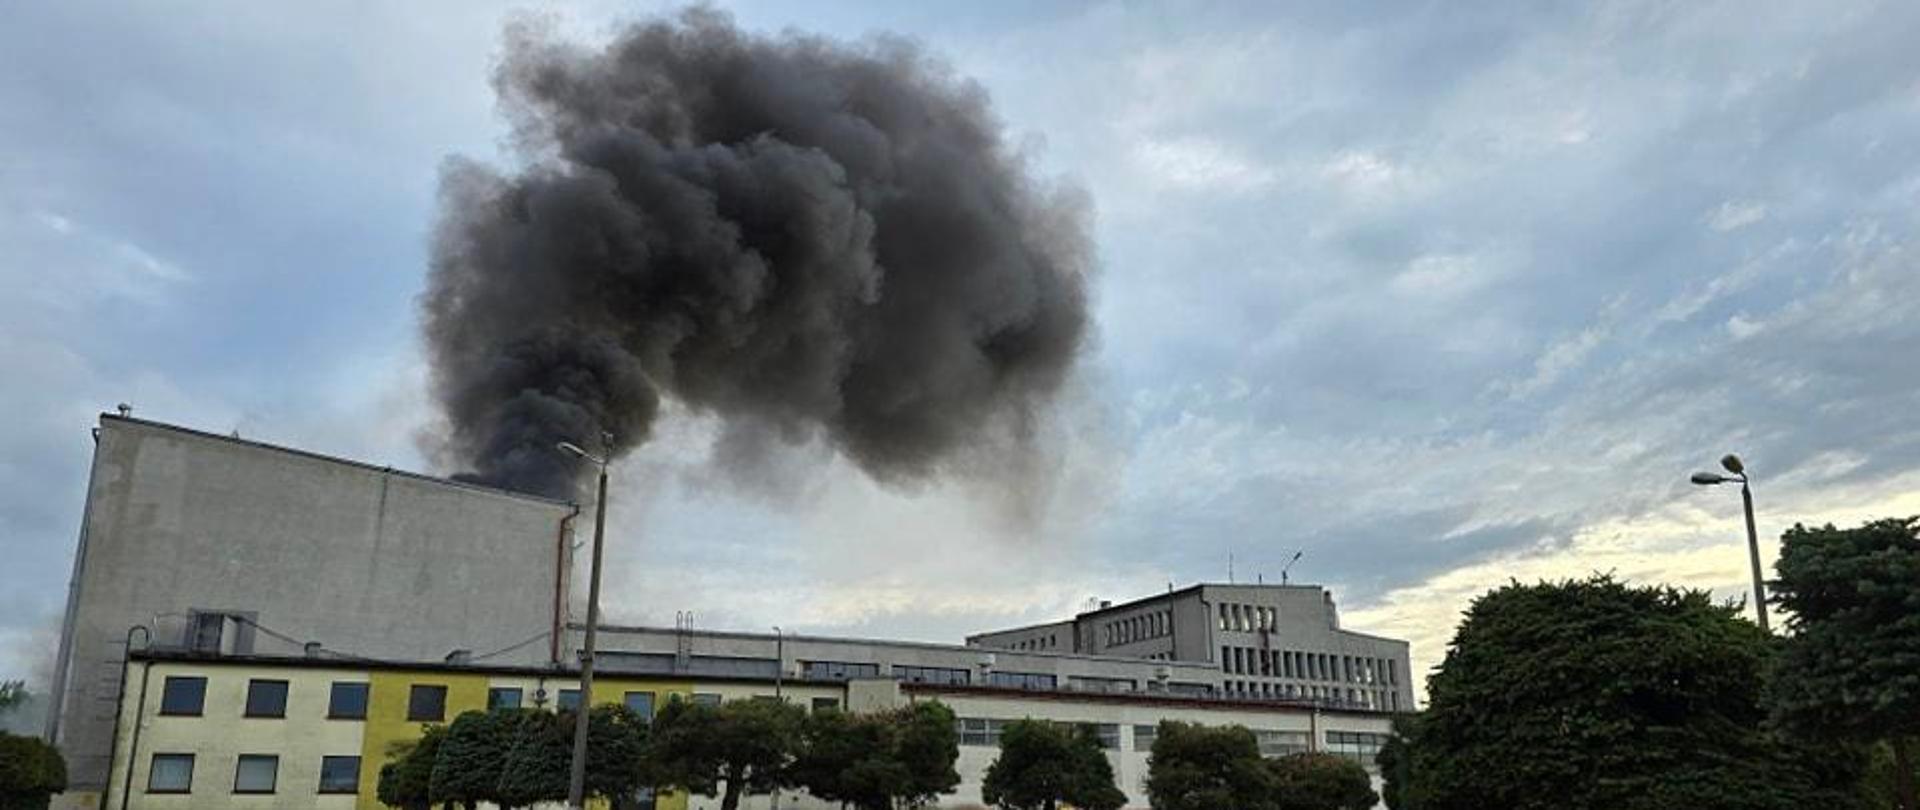 Na zdjęciu widać budynek produkcyjny. Z dachu budynku wydobywa się czarny dym.